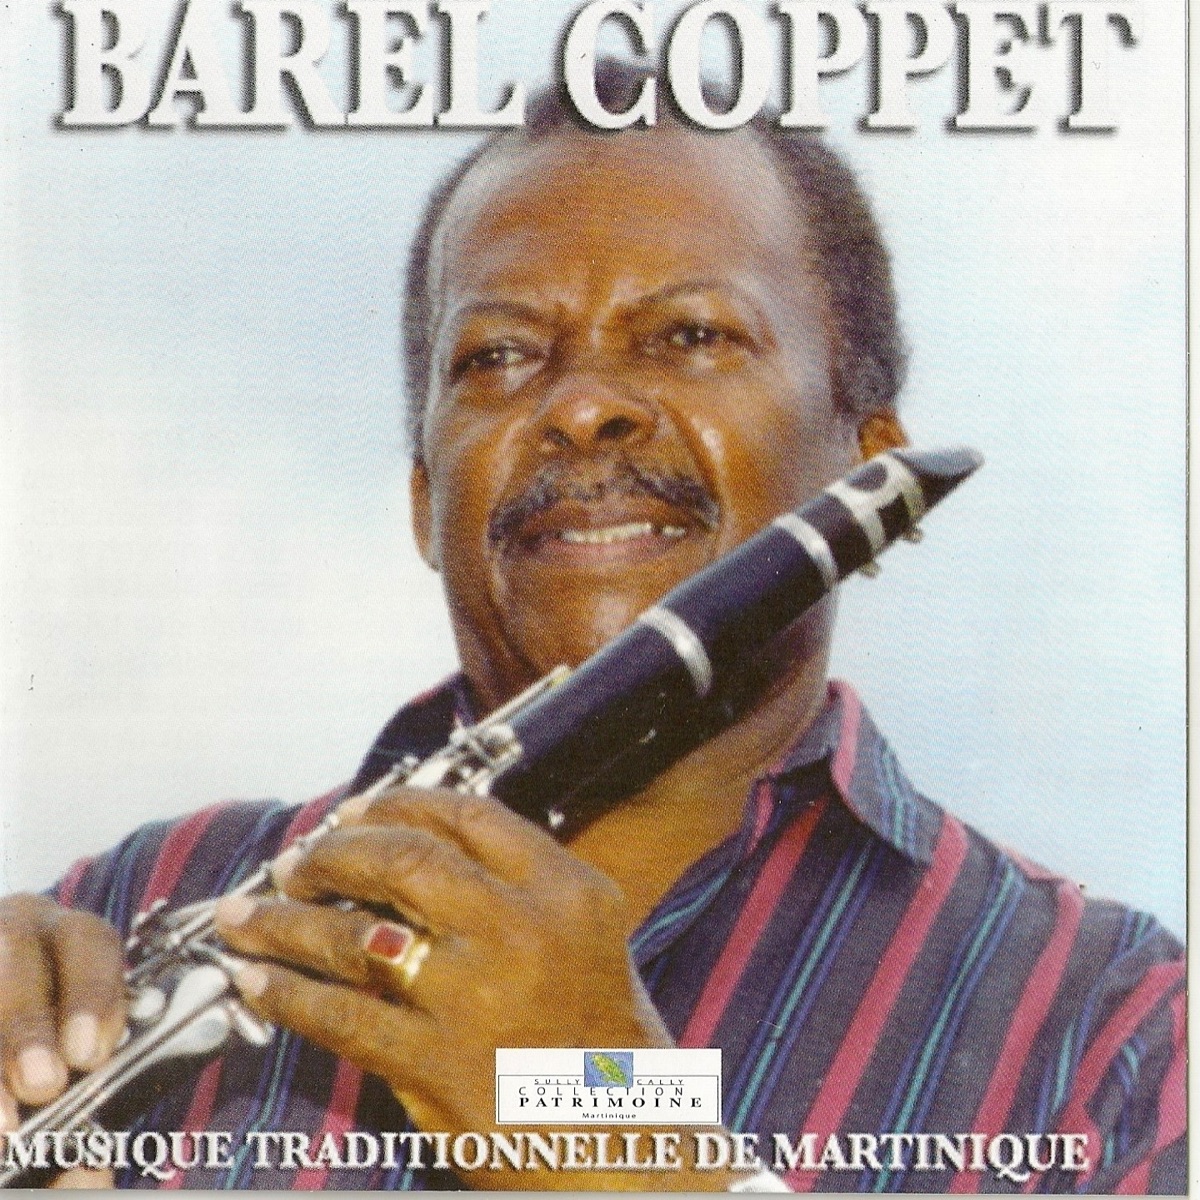 Musique traditionnelle de Martinique (Collection Patrimoine) : Barel Coppet  – Album par Barel Coppet – Apple Music